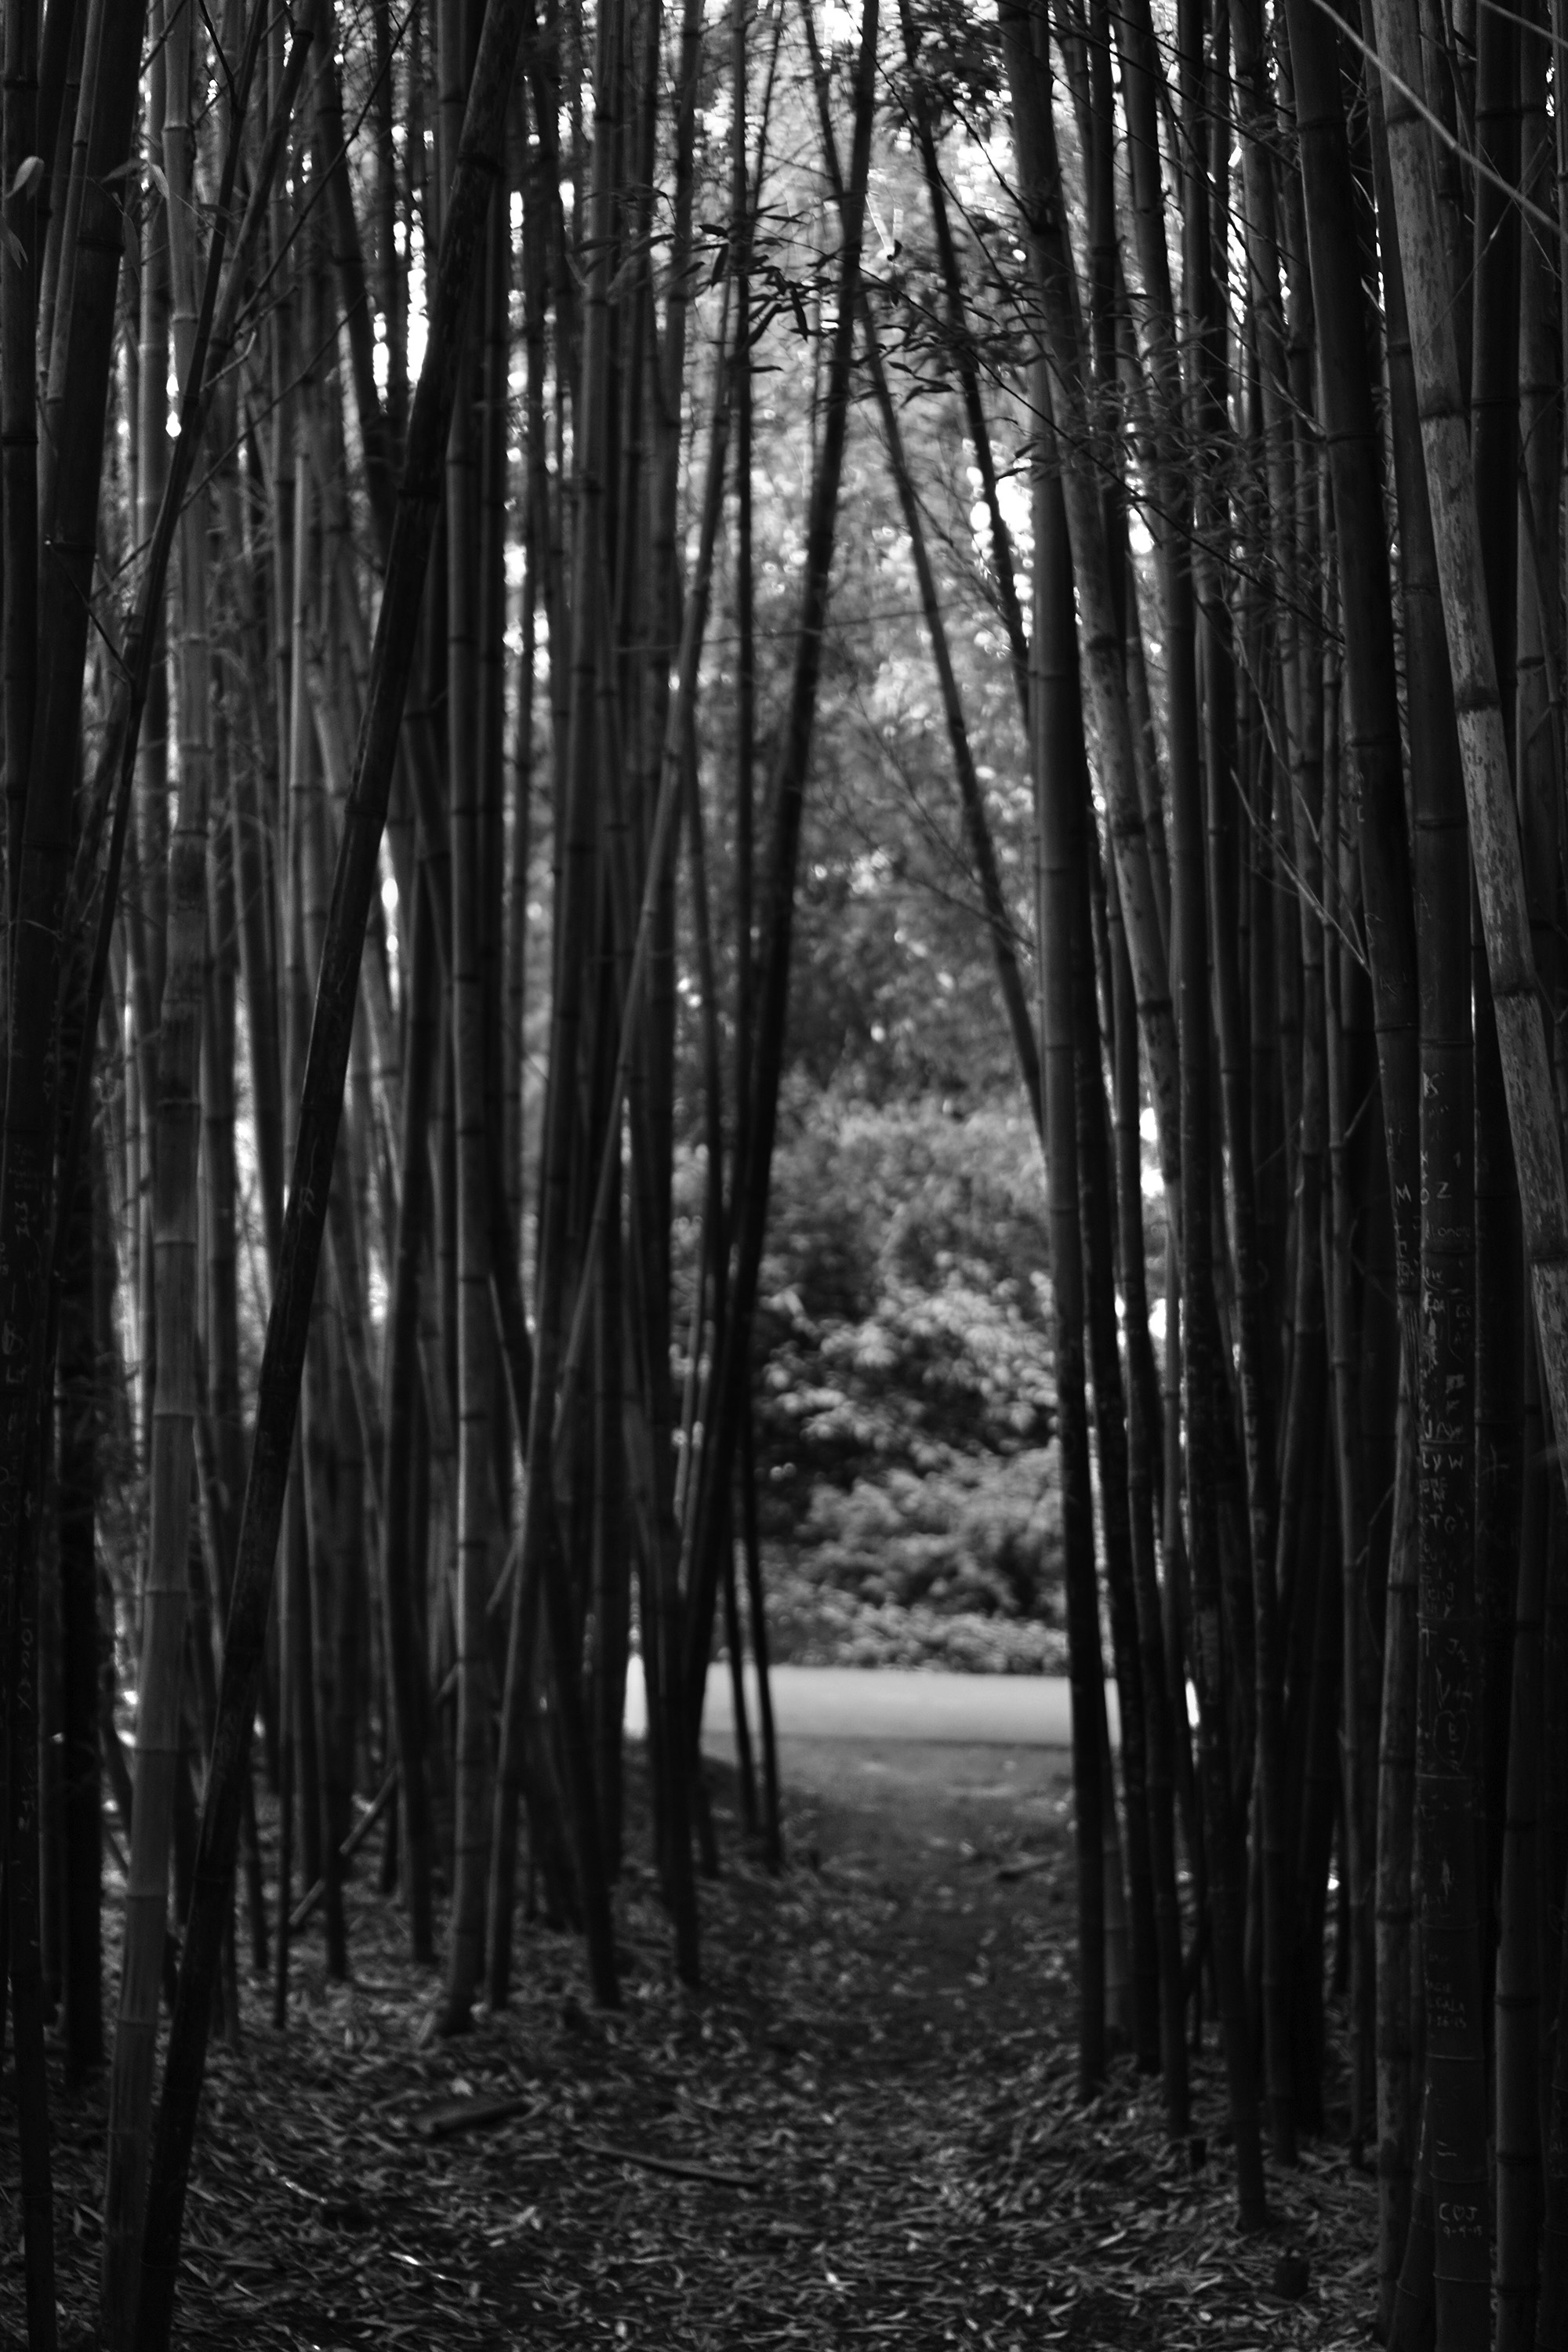 View through the bamboo, San Francisco Botanical Garden / Darker than Green